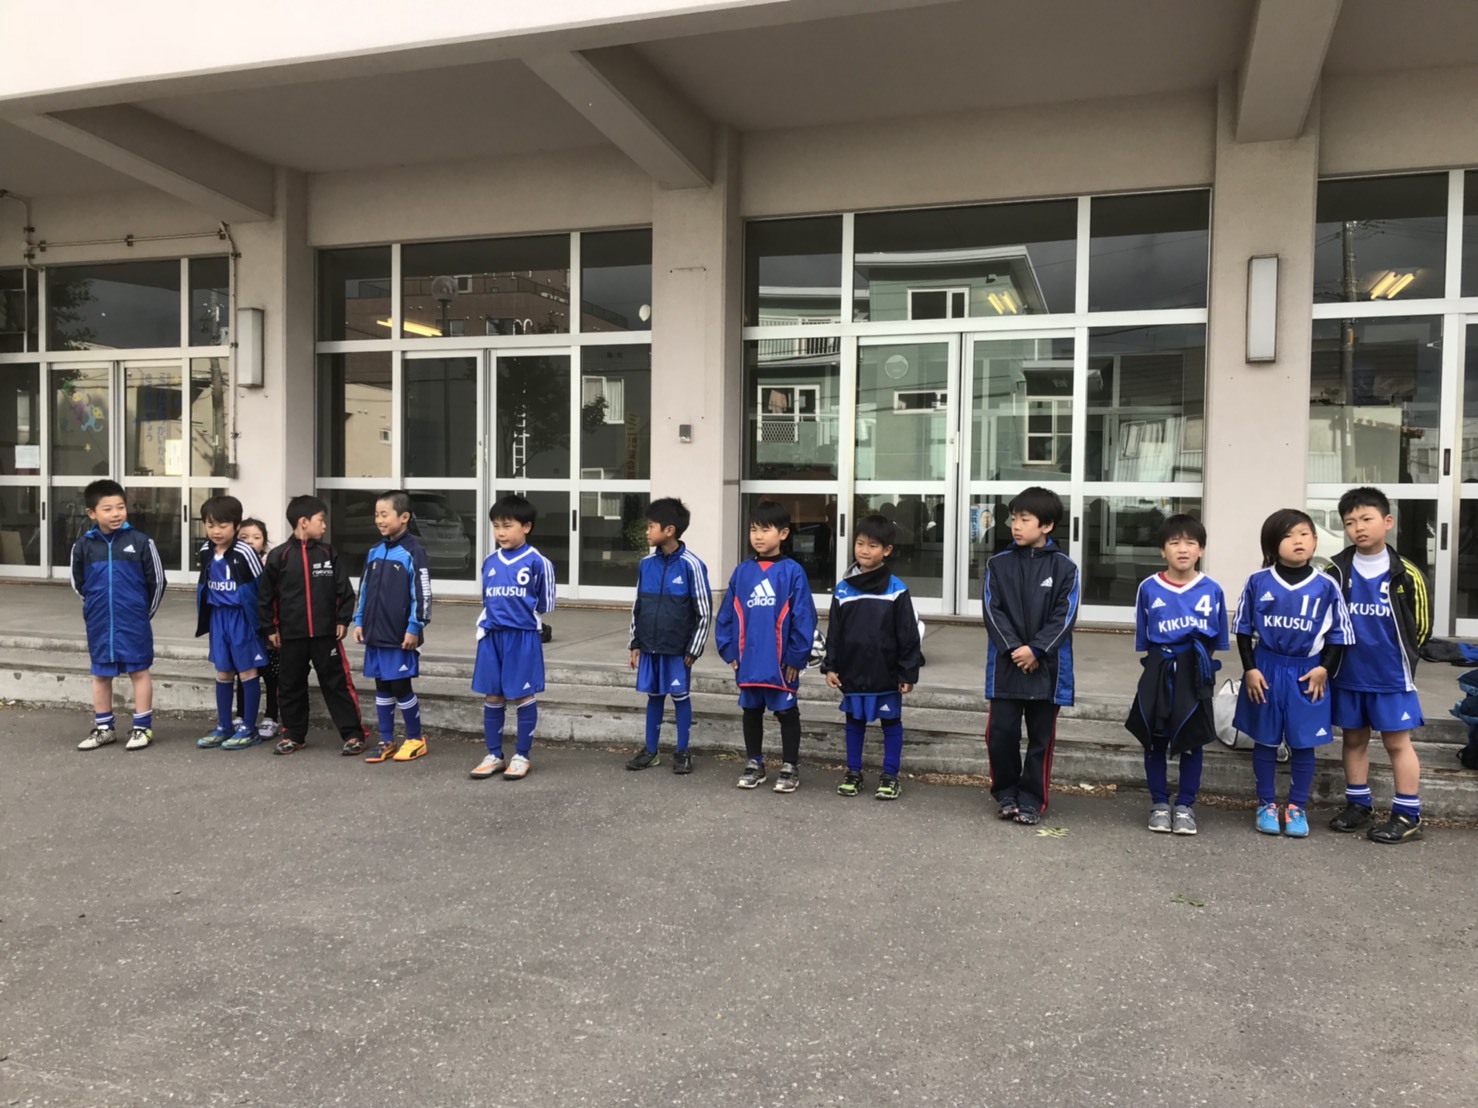 18 Livリーグu9 菊水サッカースポーツ少年団ブログ